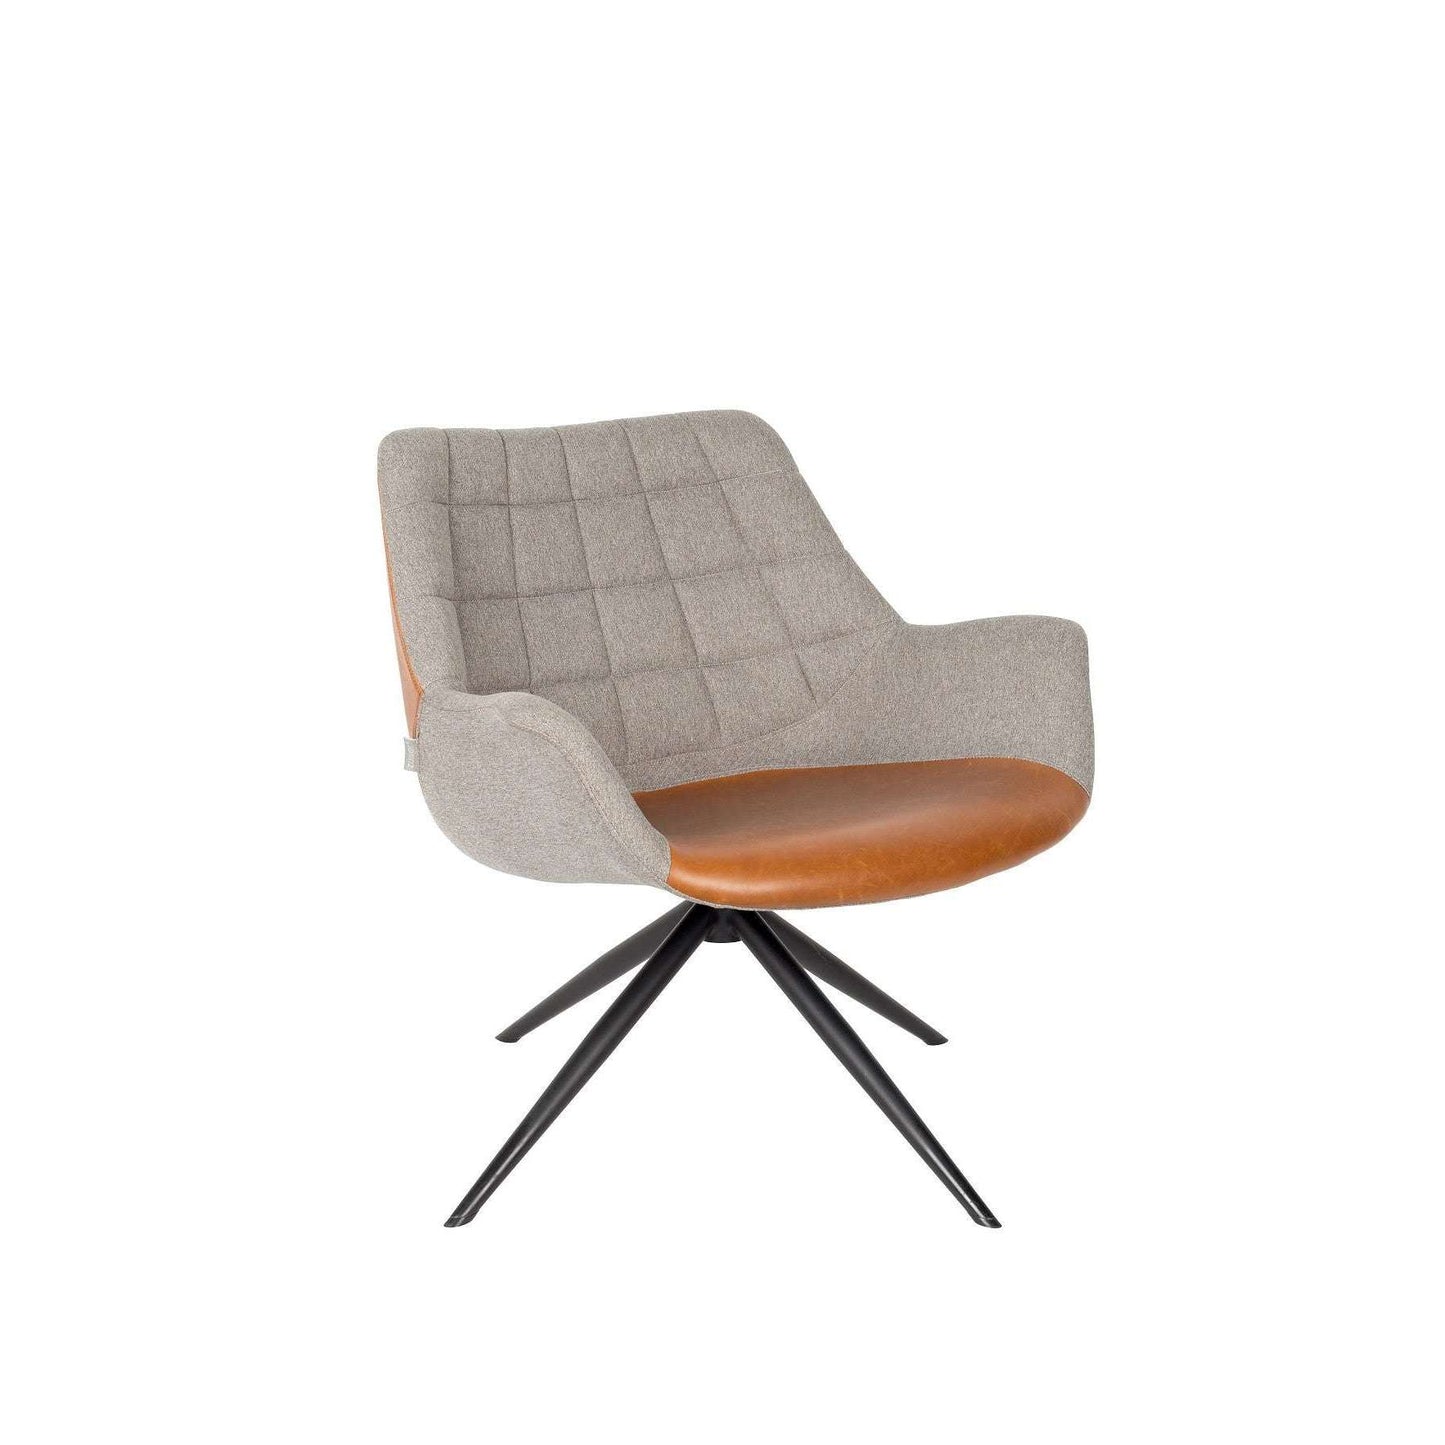 Zuiver fauteuil doulton vintage bruin 80,5 x 84,5 x 78,5 cm